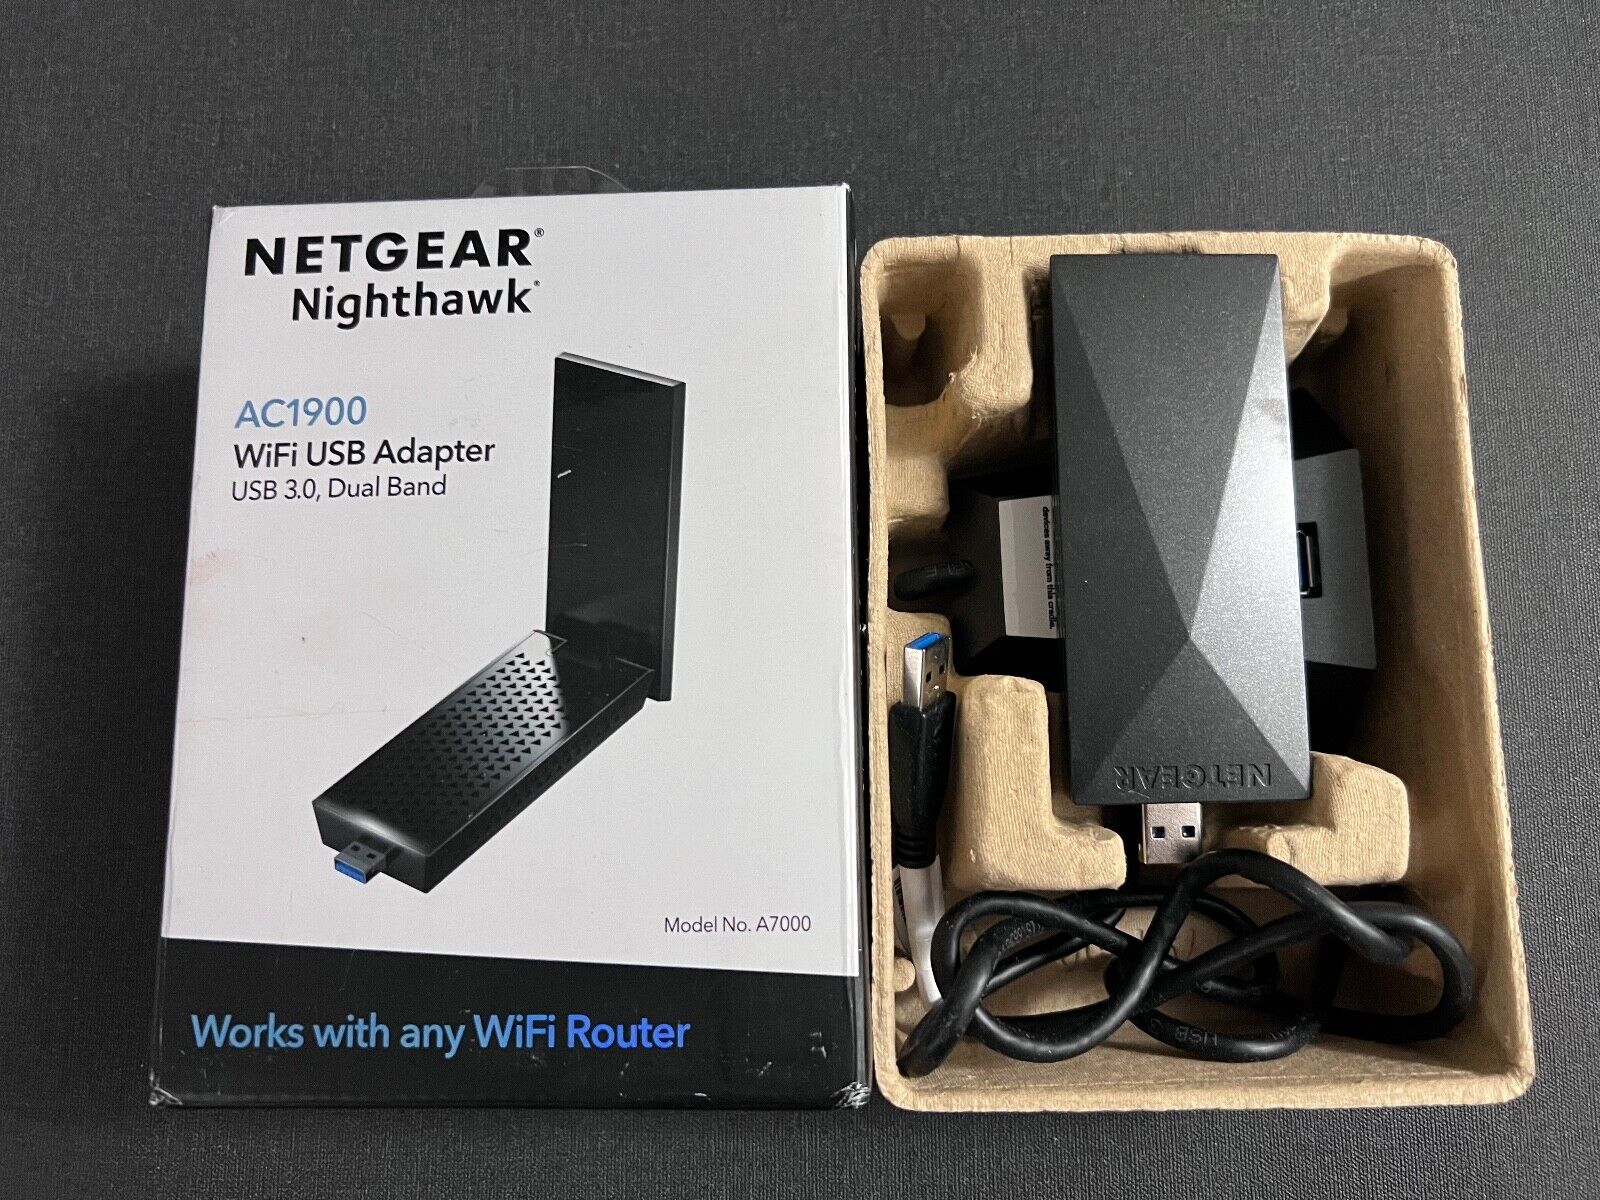 NETGEAR Nighthawk AC1900 Dual-Band WiFi USB 3.0 Adapter A7000